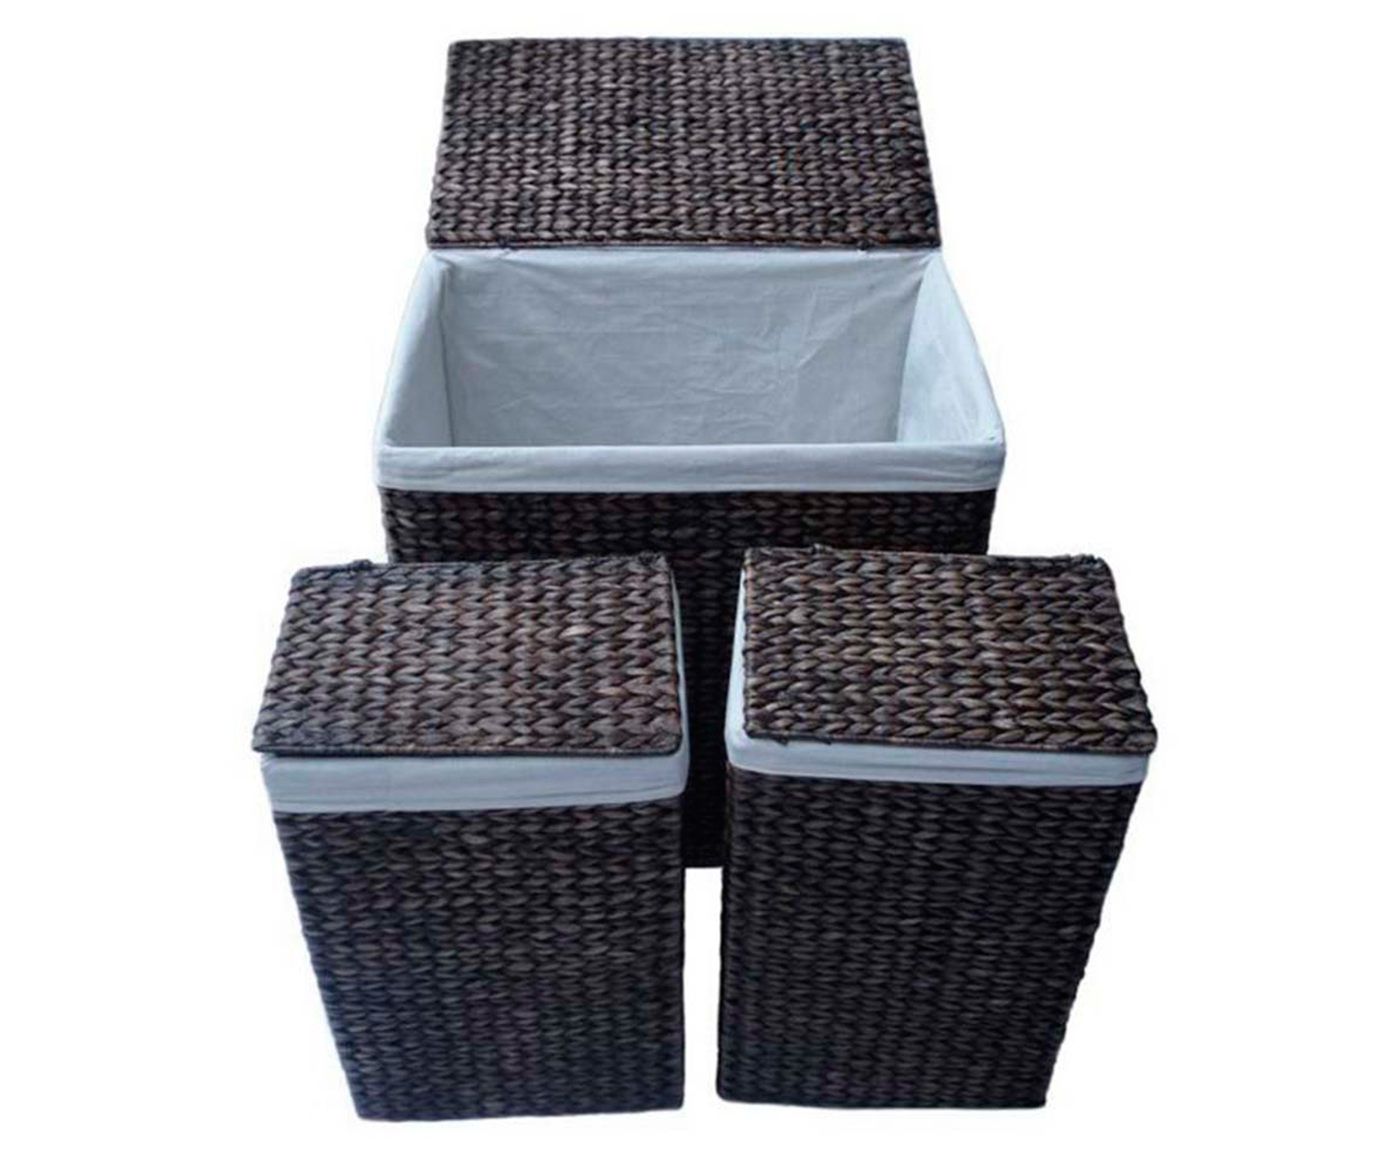 Conjunto de cestas fiber tranci | Westwing.com.br